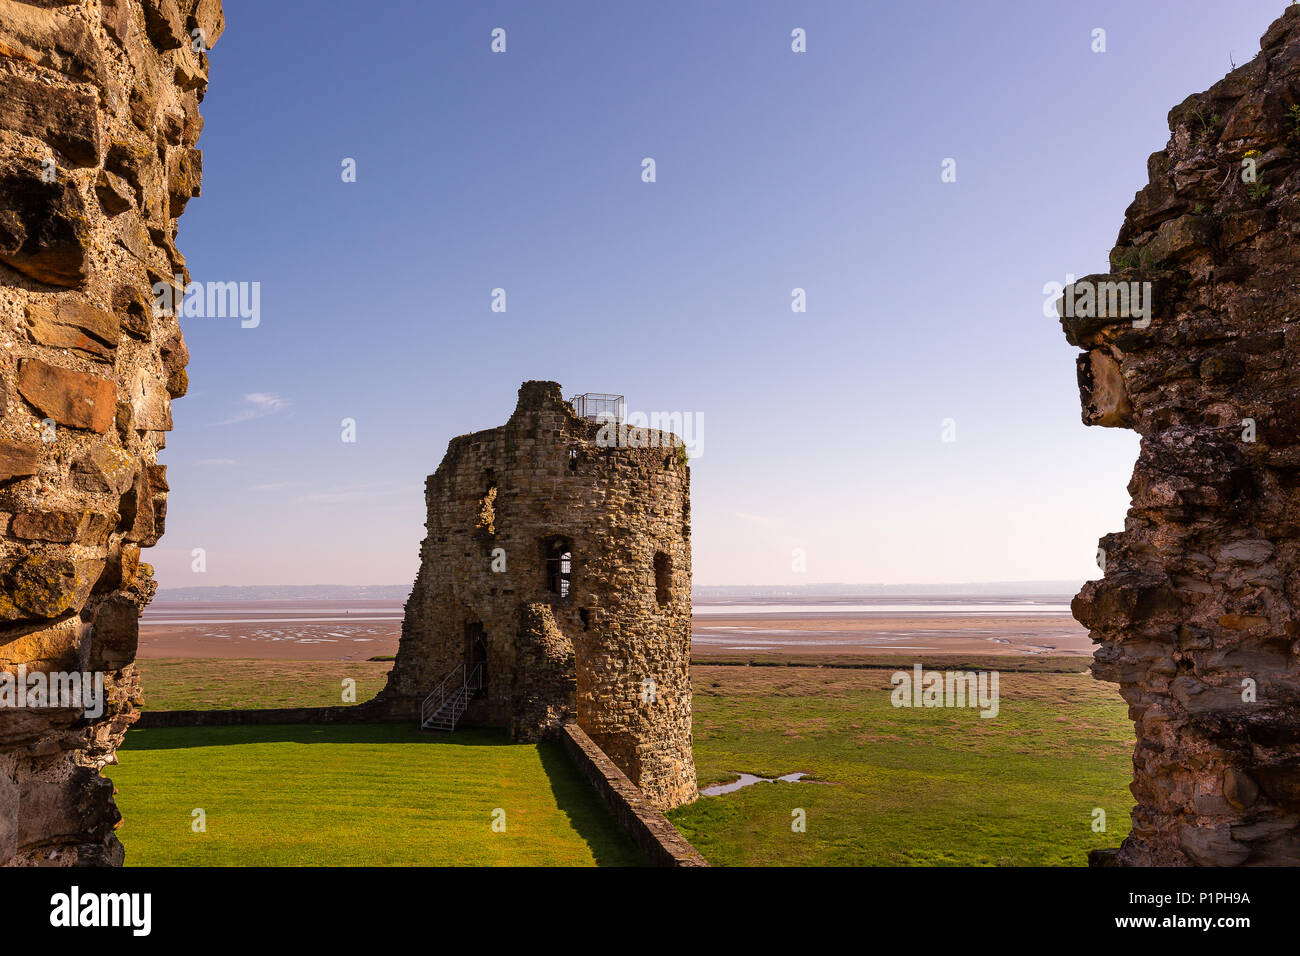 Ruines du château de silex situé près de la mer au pays de Galles, le Royaume-Uni au début du printemps, matin Banque D'Images